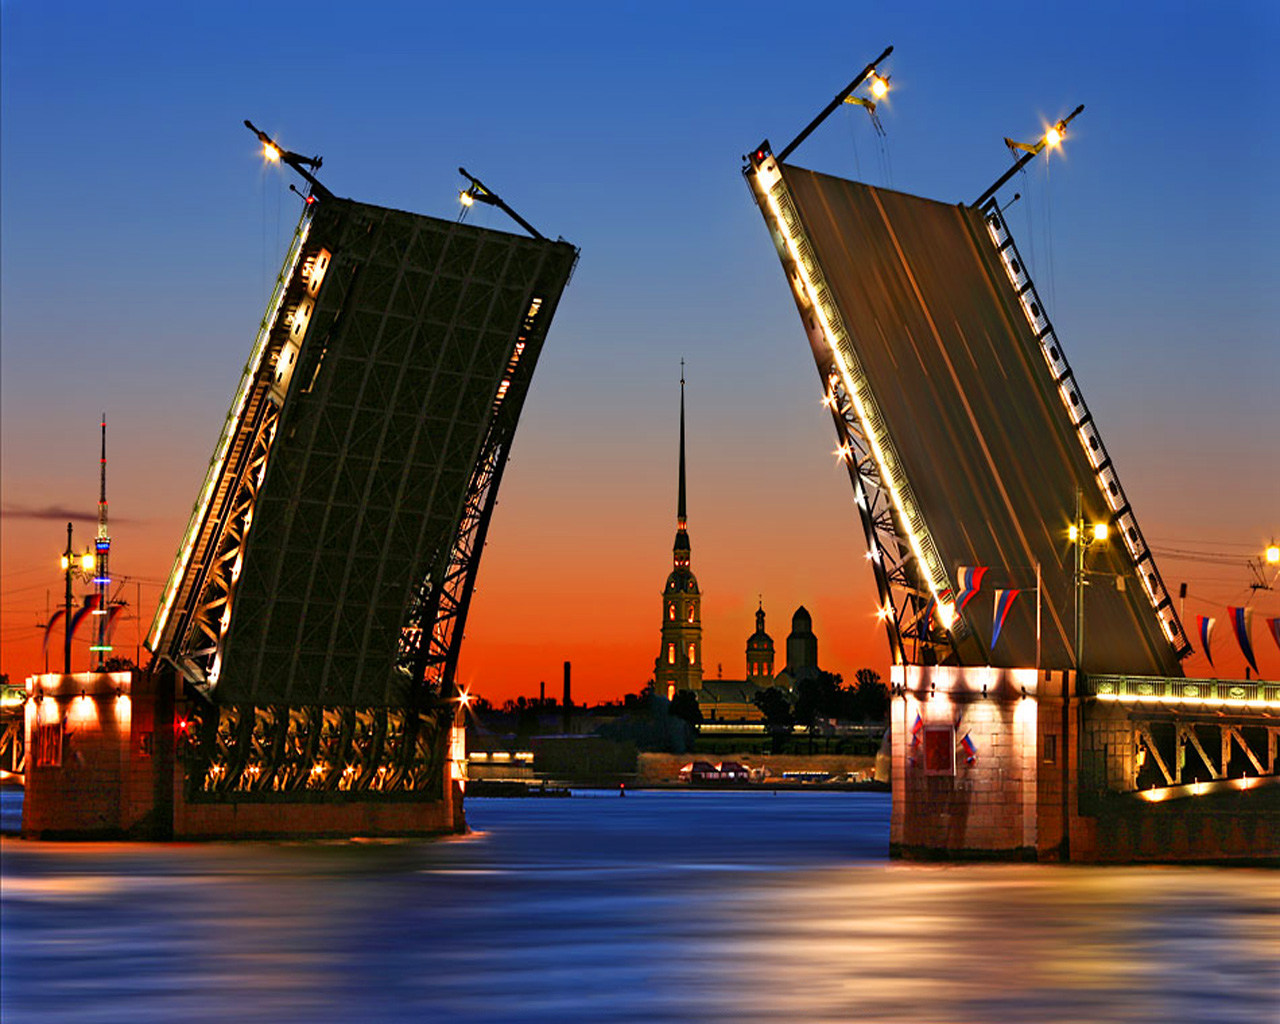 Санкт-петербург куда сходить и что посмотреть из достопримечательностей? список топ мест